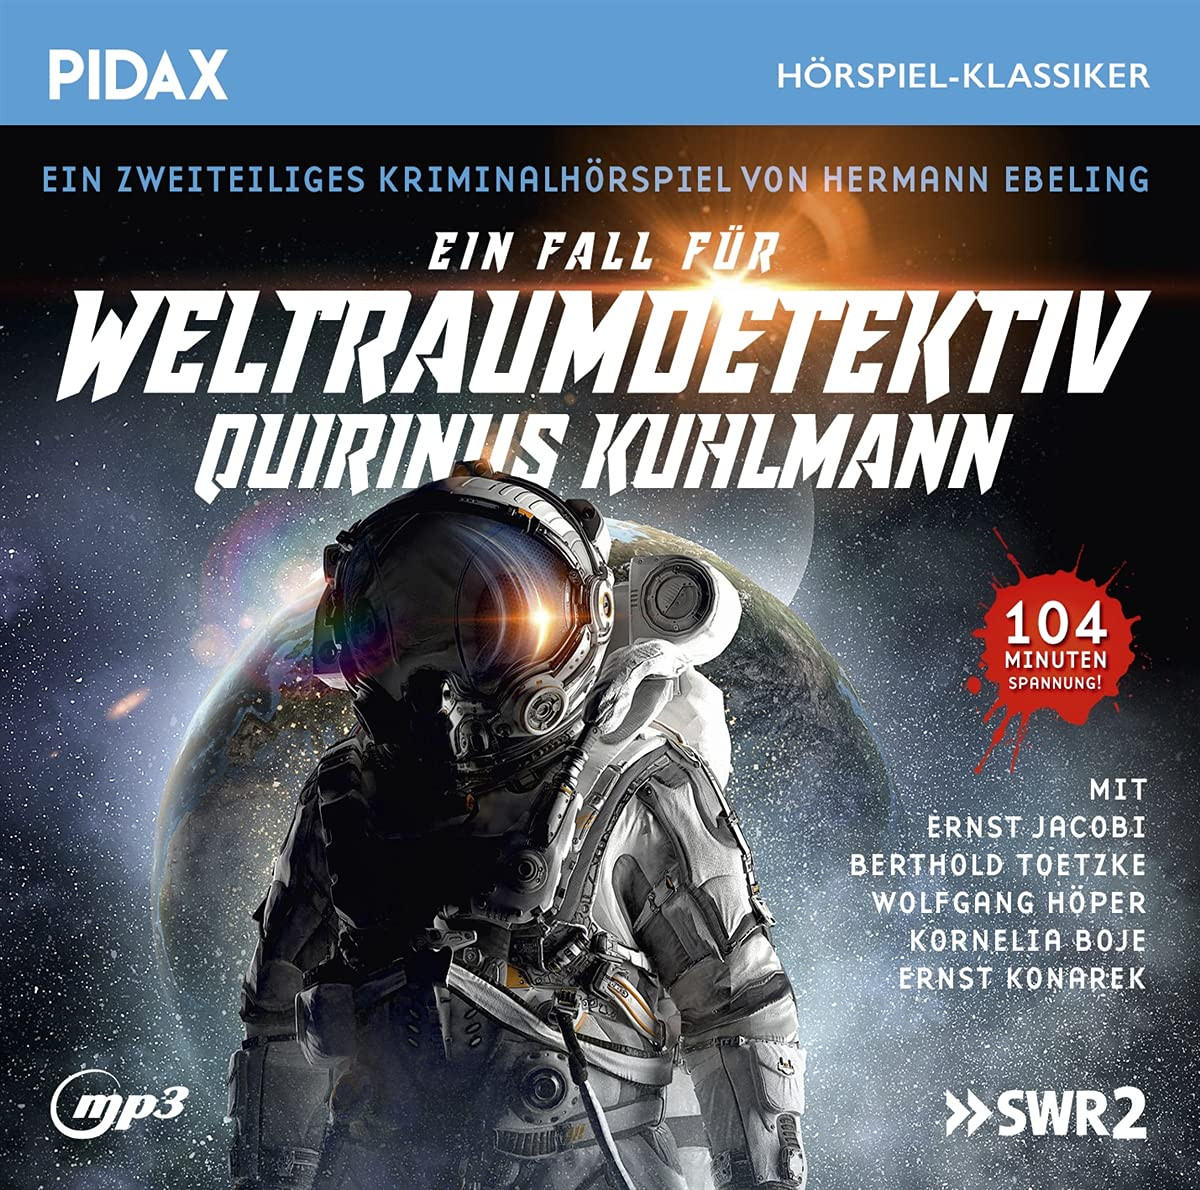 Pidax Hörspiel Klassiker - Ein Fall für Weltraumdetektiv Quirinus Kuhlmann